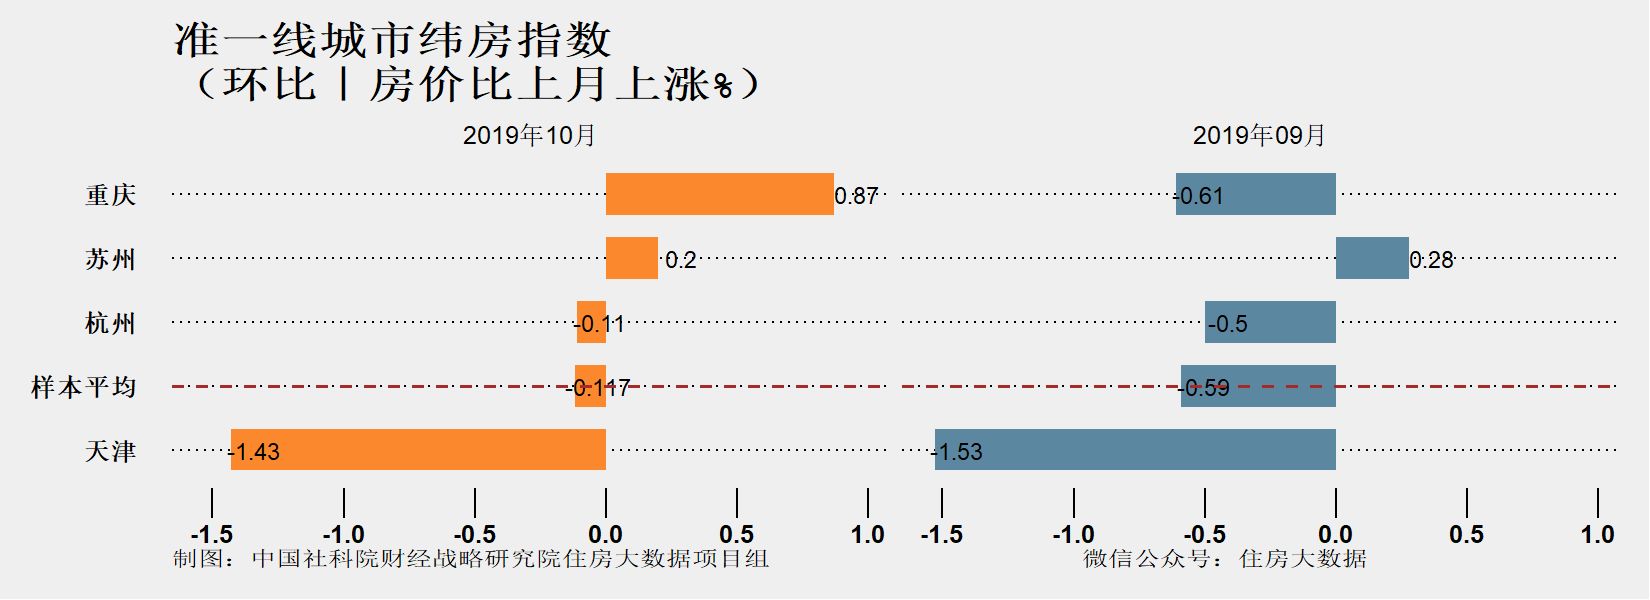 社科院：2019年准一线城市中天津重庆房价相对低迷 苏州上涨快但涨势得到抑制-中国网地产